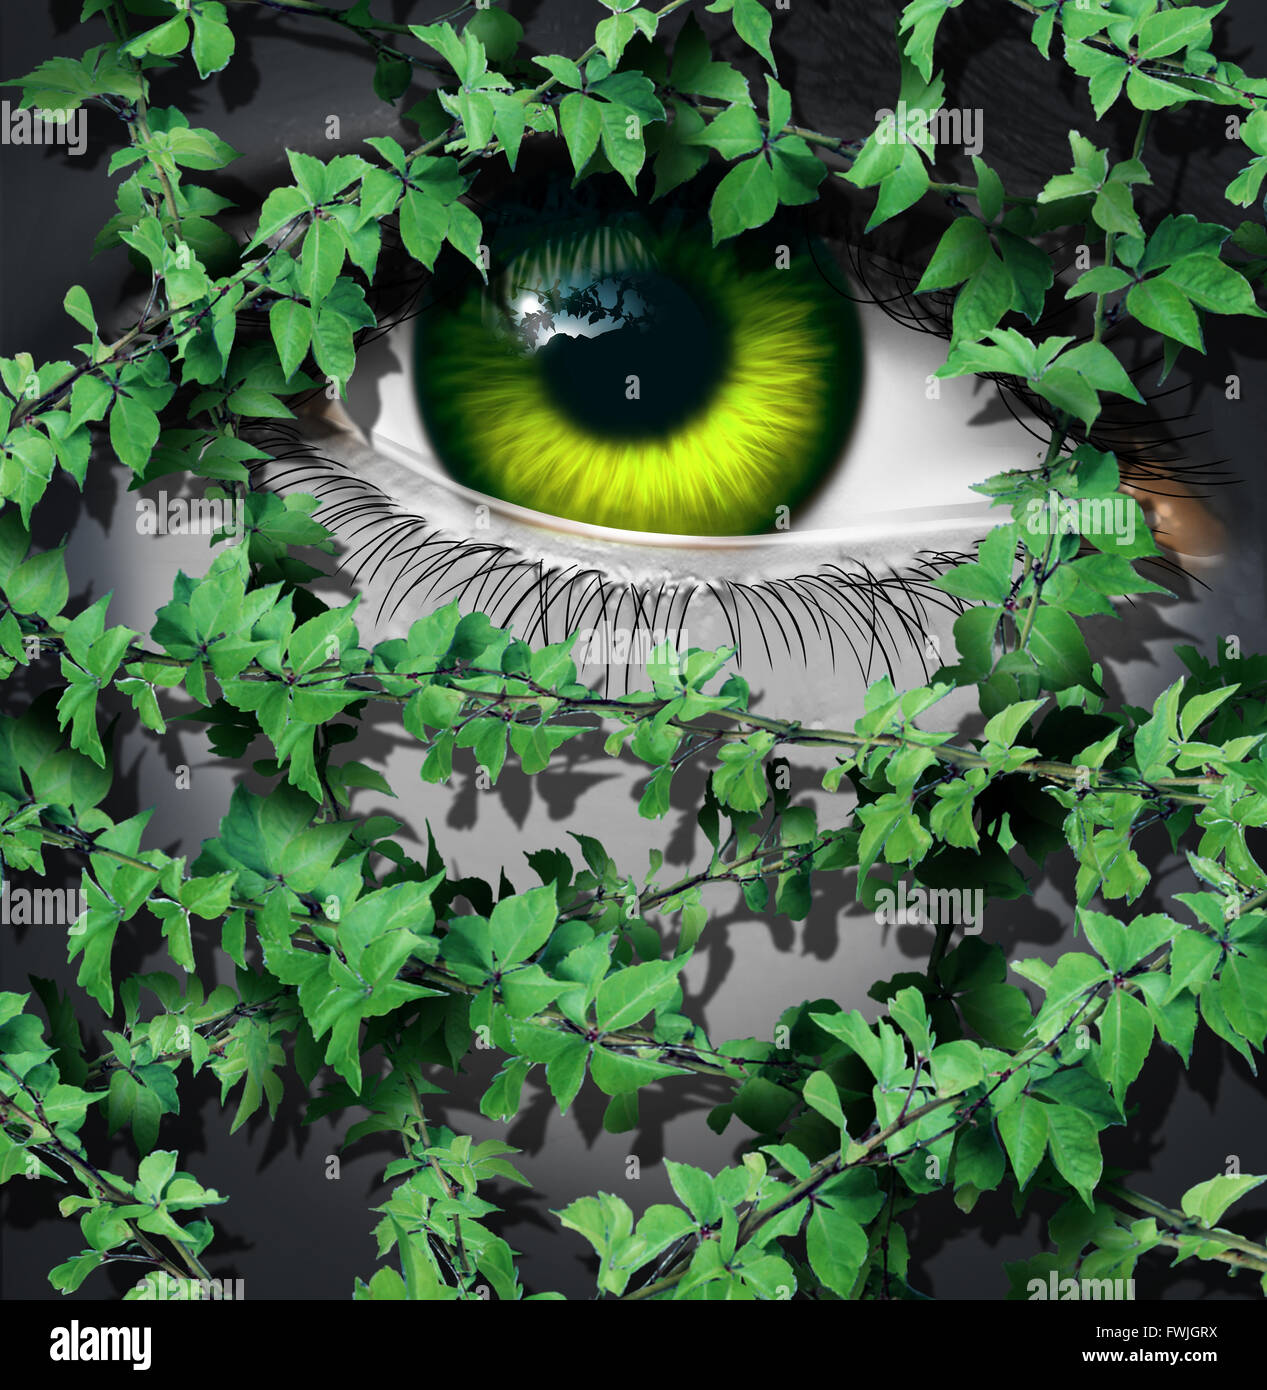 Natur menschlichen Konzept als das grüne Auge einer Person Blick hinter eine wachsende Gruppe von Blatt Reben als ökologische Idee oder ein Erde-Tag-Vision-Symbol. Stockfoto